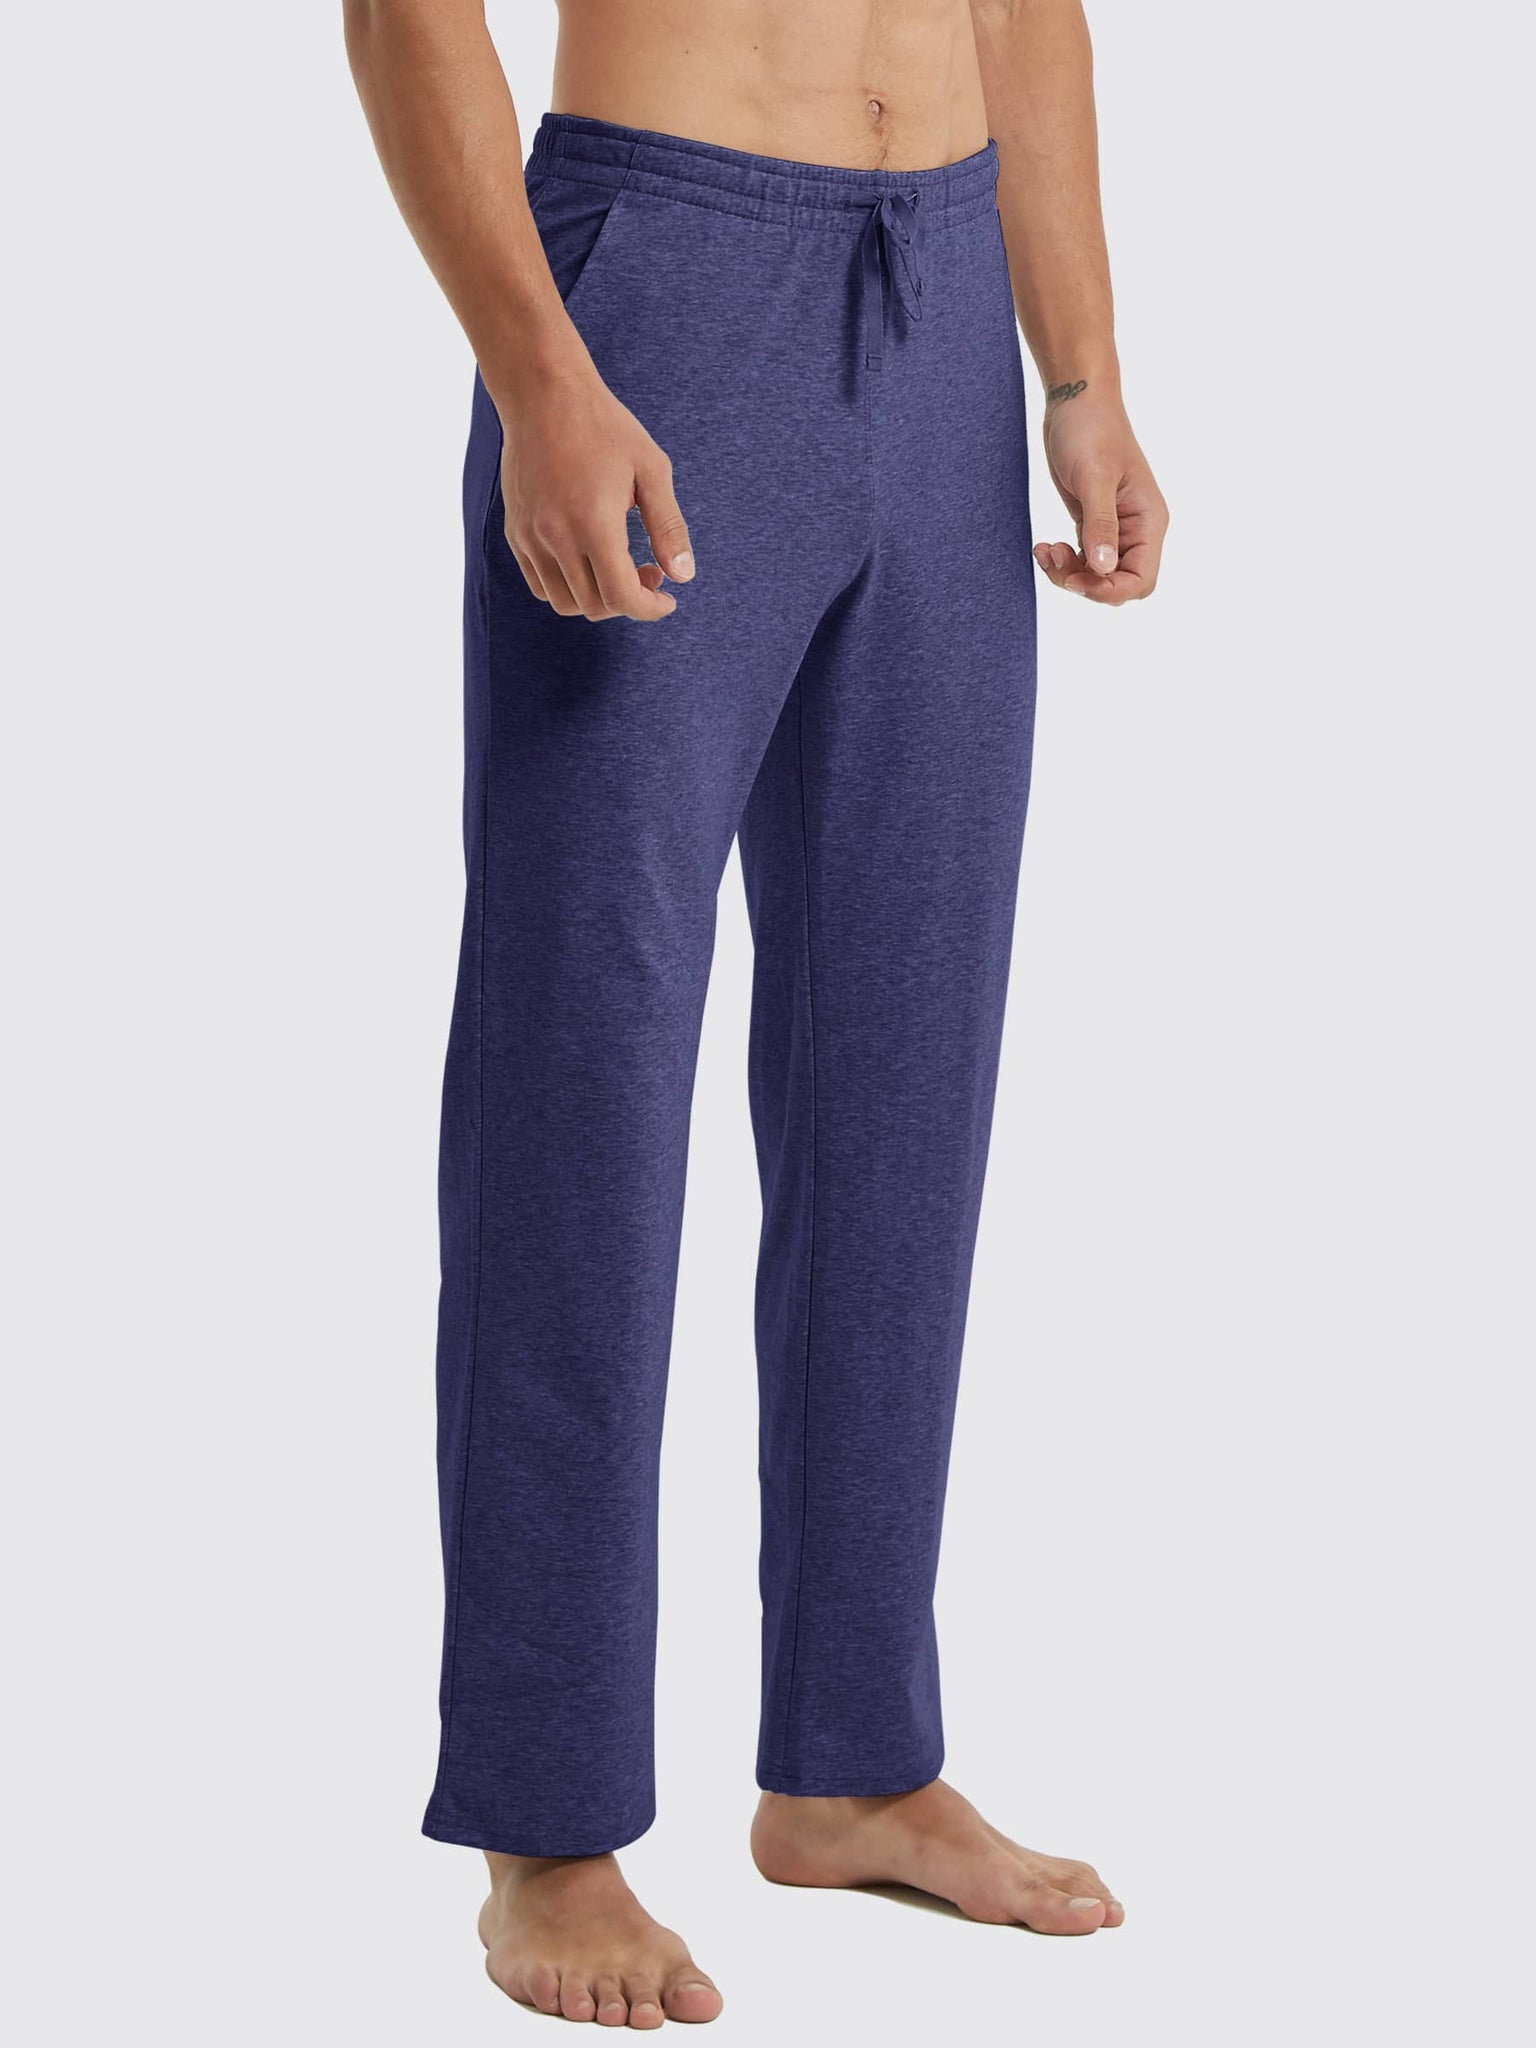 Men's Cotton Yoga Balance Sweatpants_Violet_model3